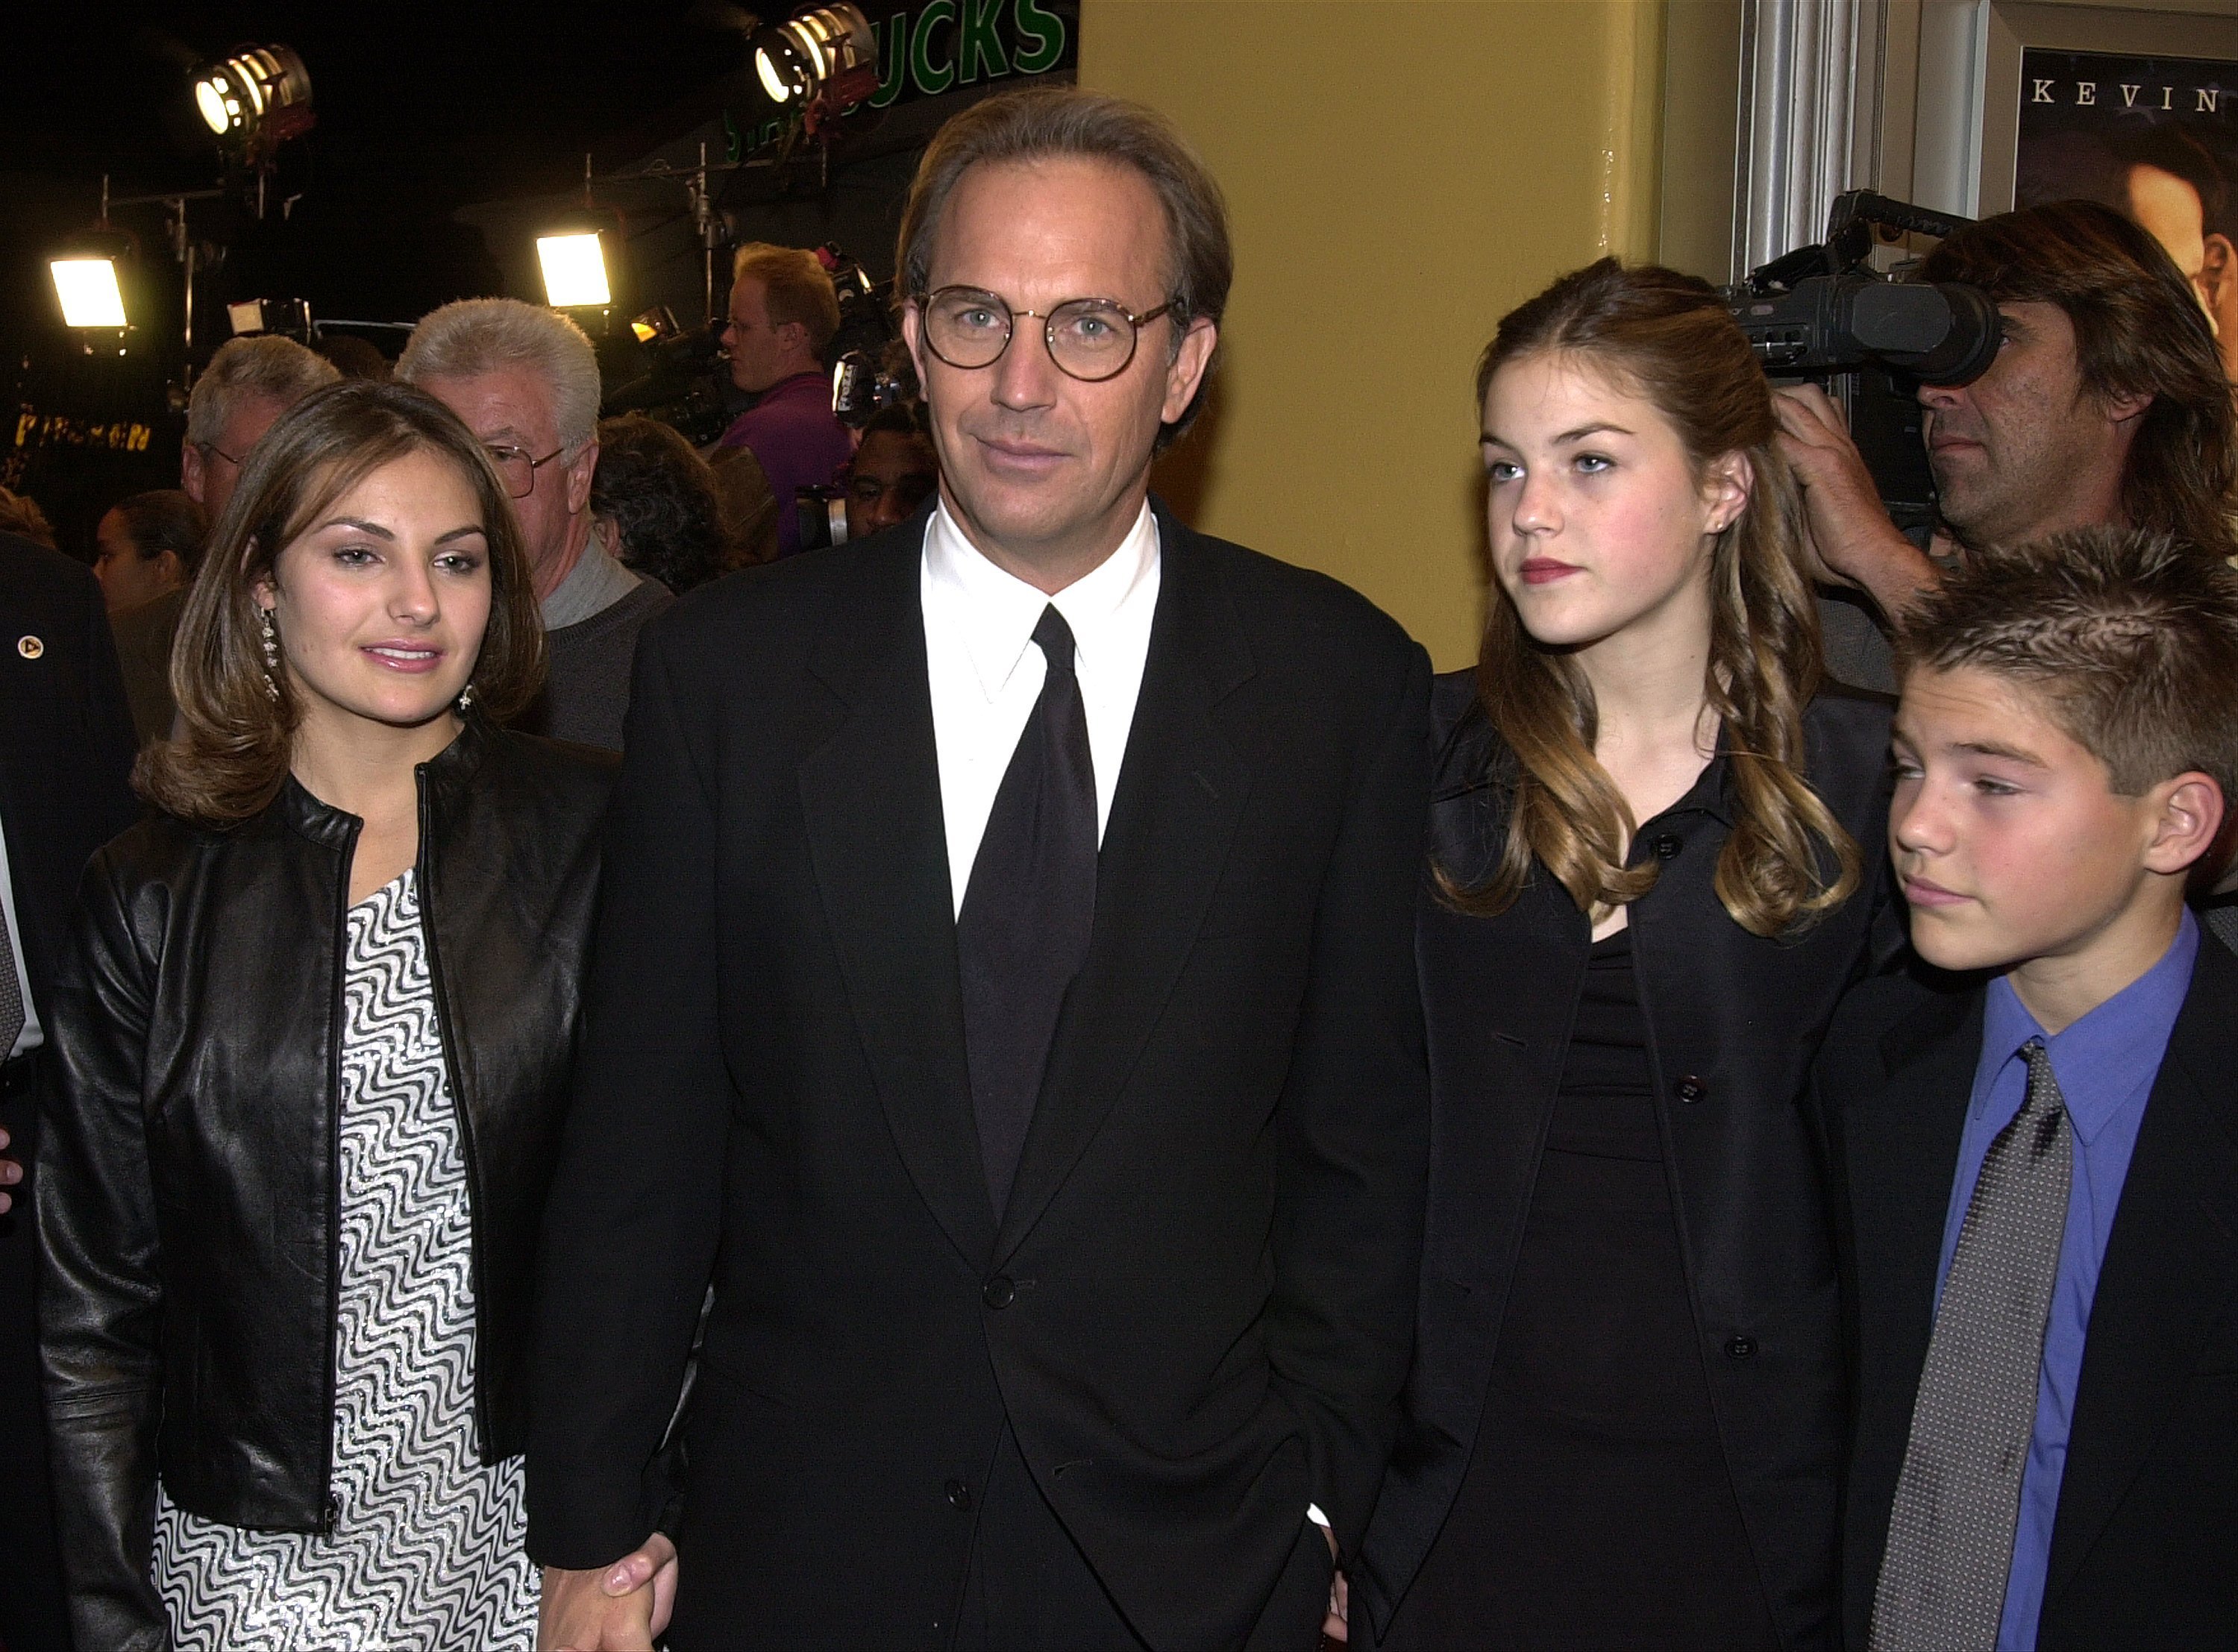 El actor Kevin Costner y sus hijos de izquierda a derecha: Lily, Annie y Joe llegan para el estreno de la película de New Line Cinema "Thirteen Days" el 19 de diciembre de 2000 en Los Ángeles, CA. | Foto: Getty Images